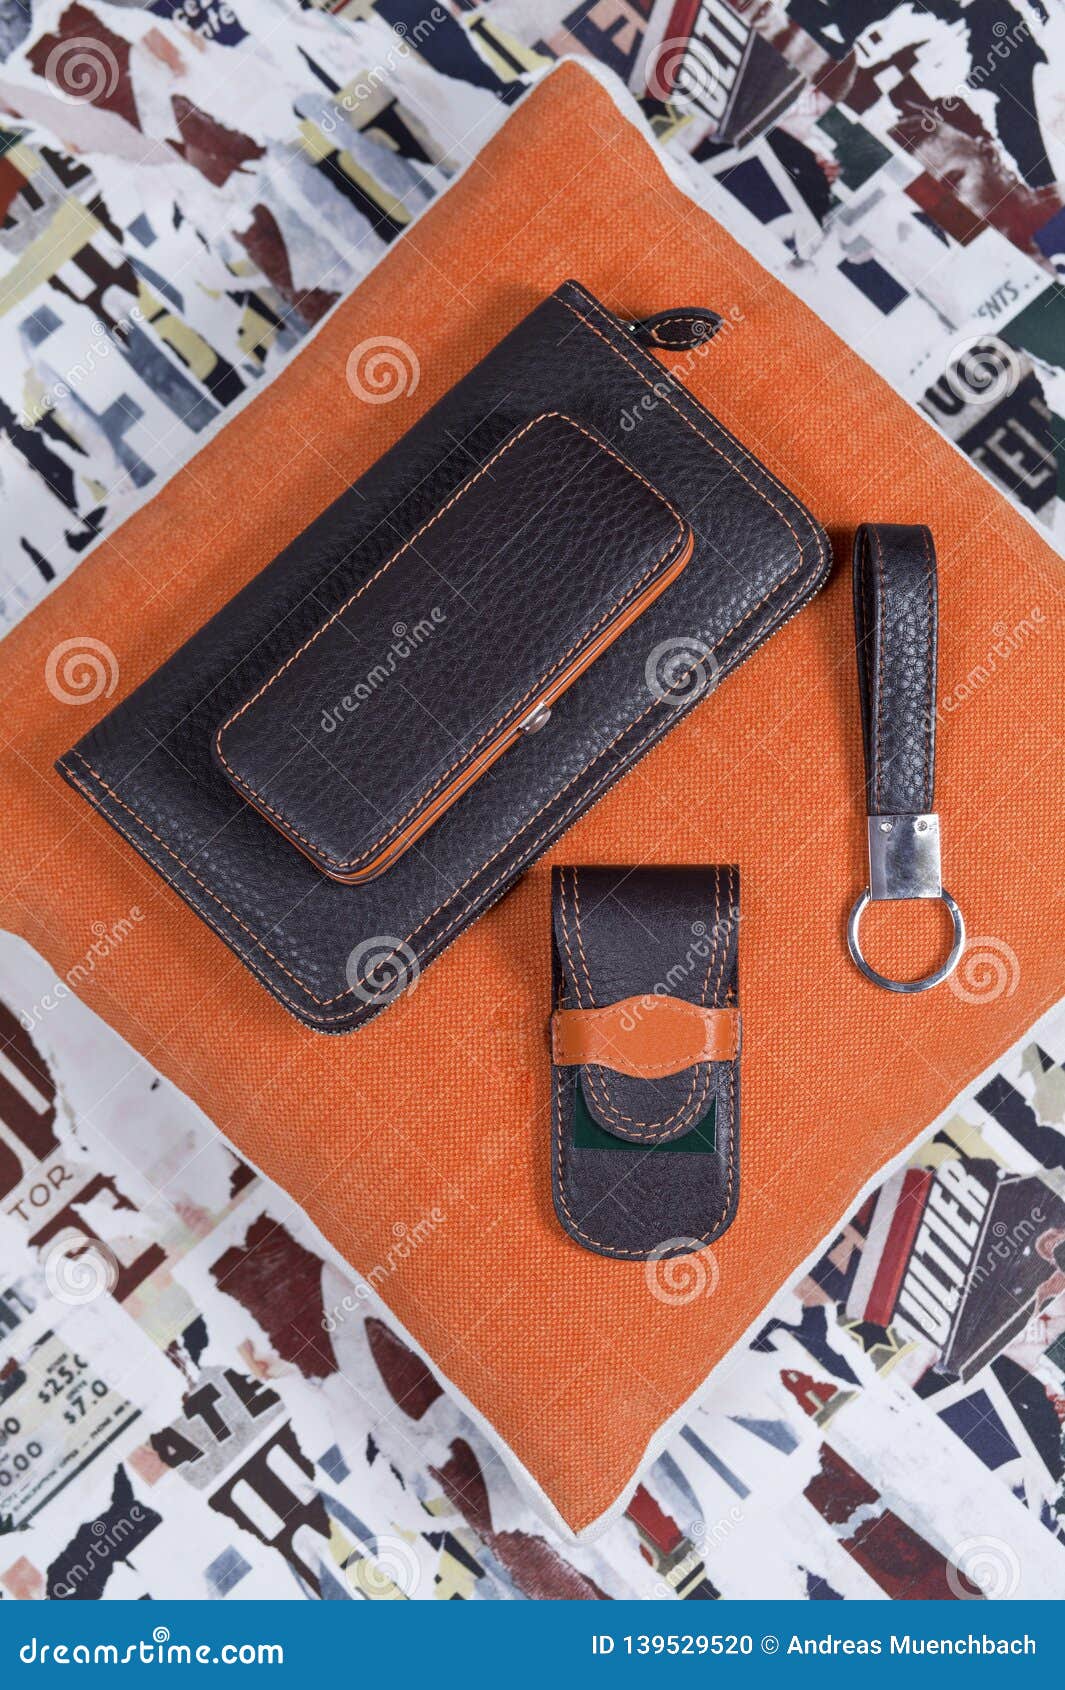 stillife of handmade leather set for men including wallet keyring and manicure